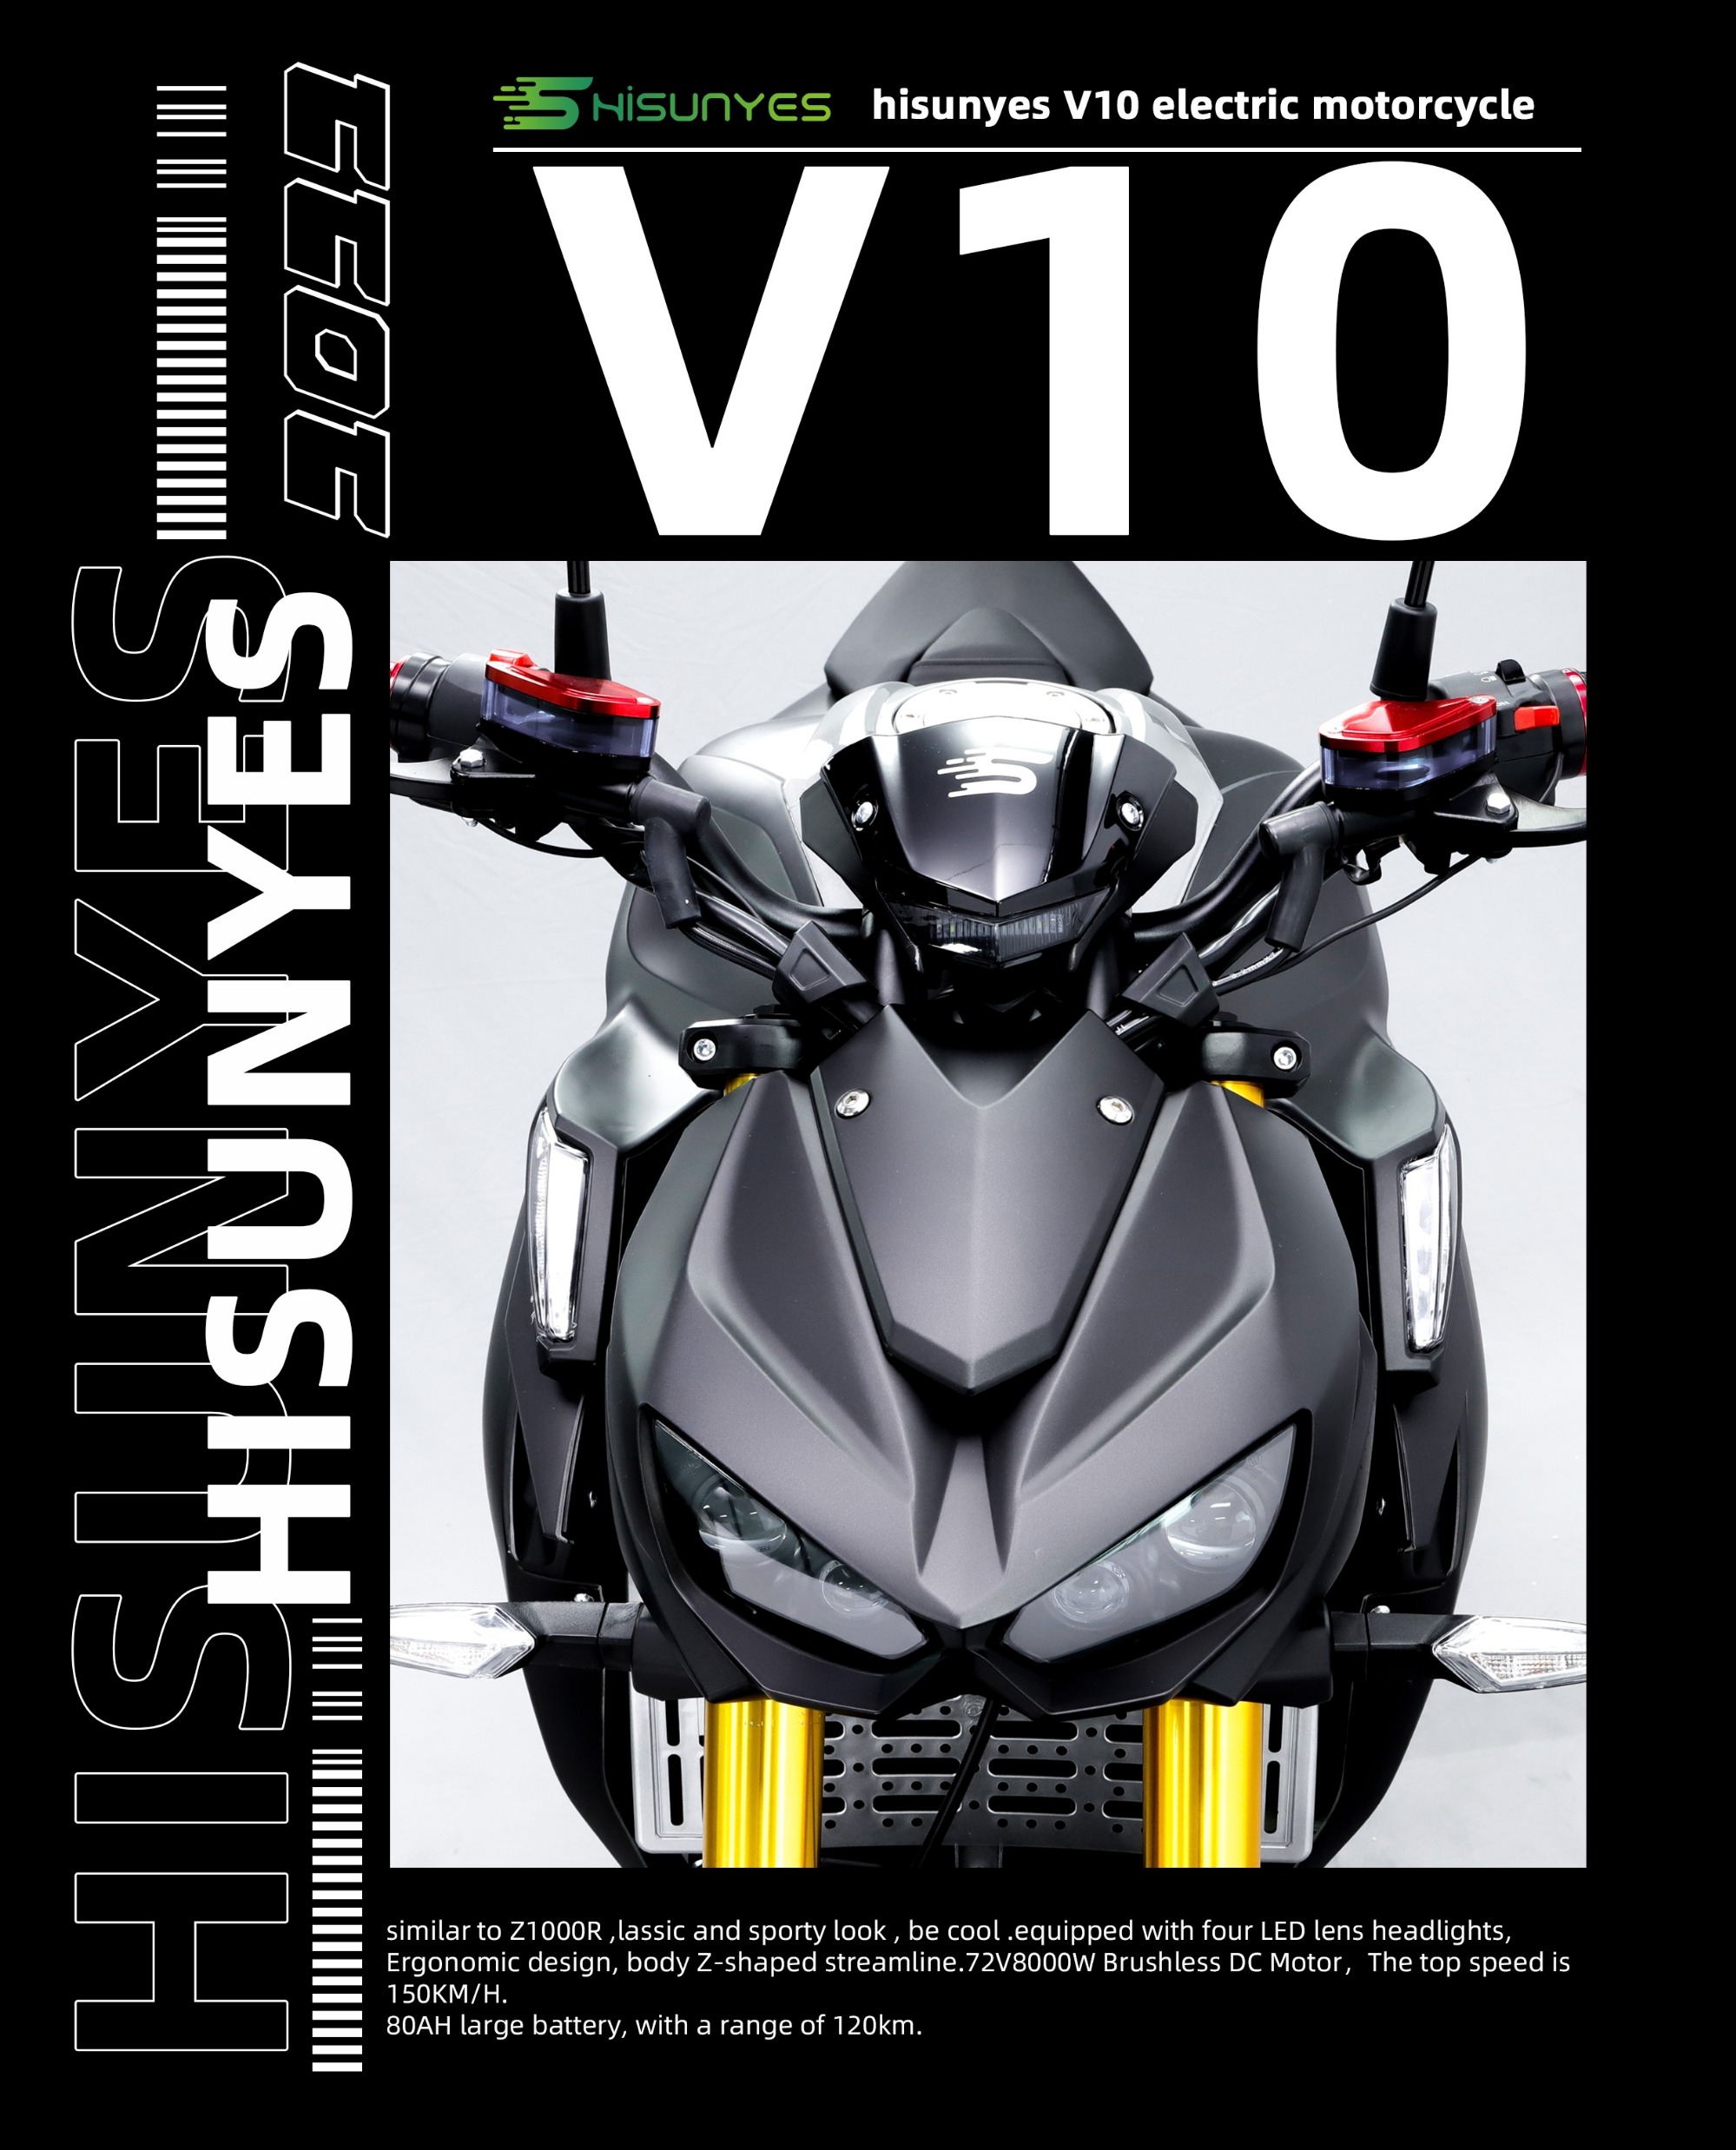 Motocicleta fria V 10